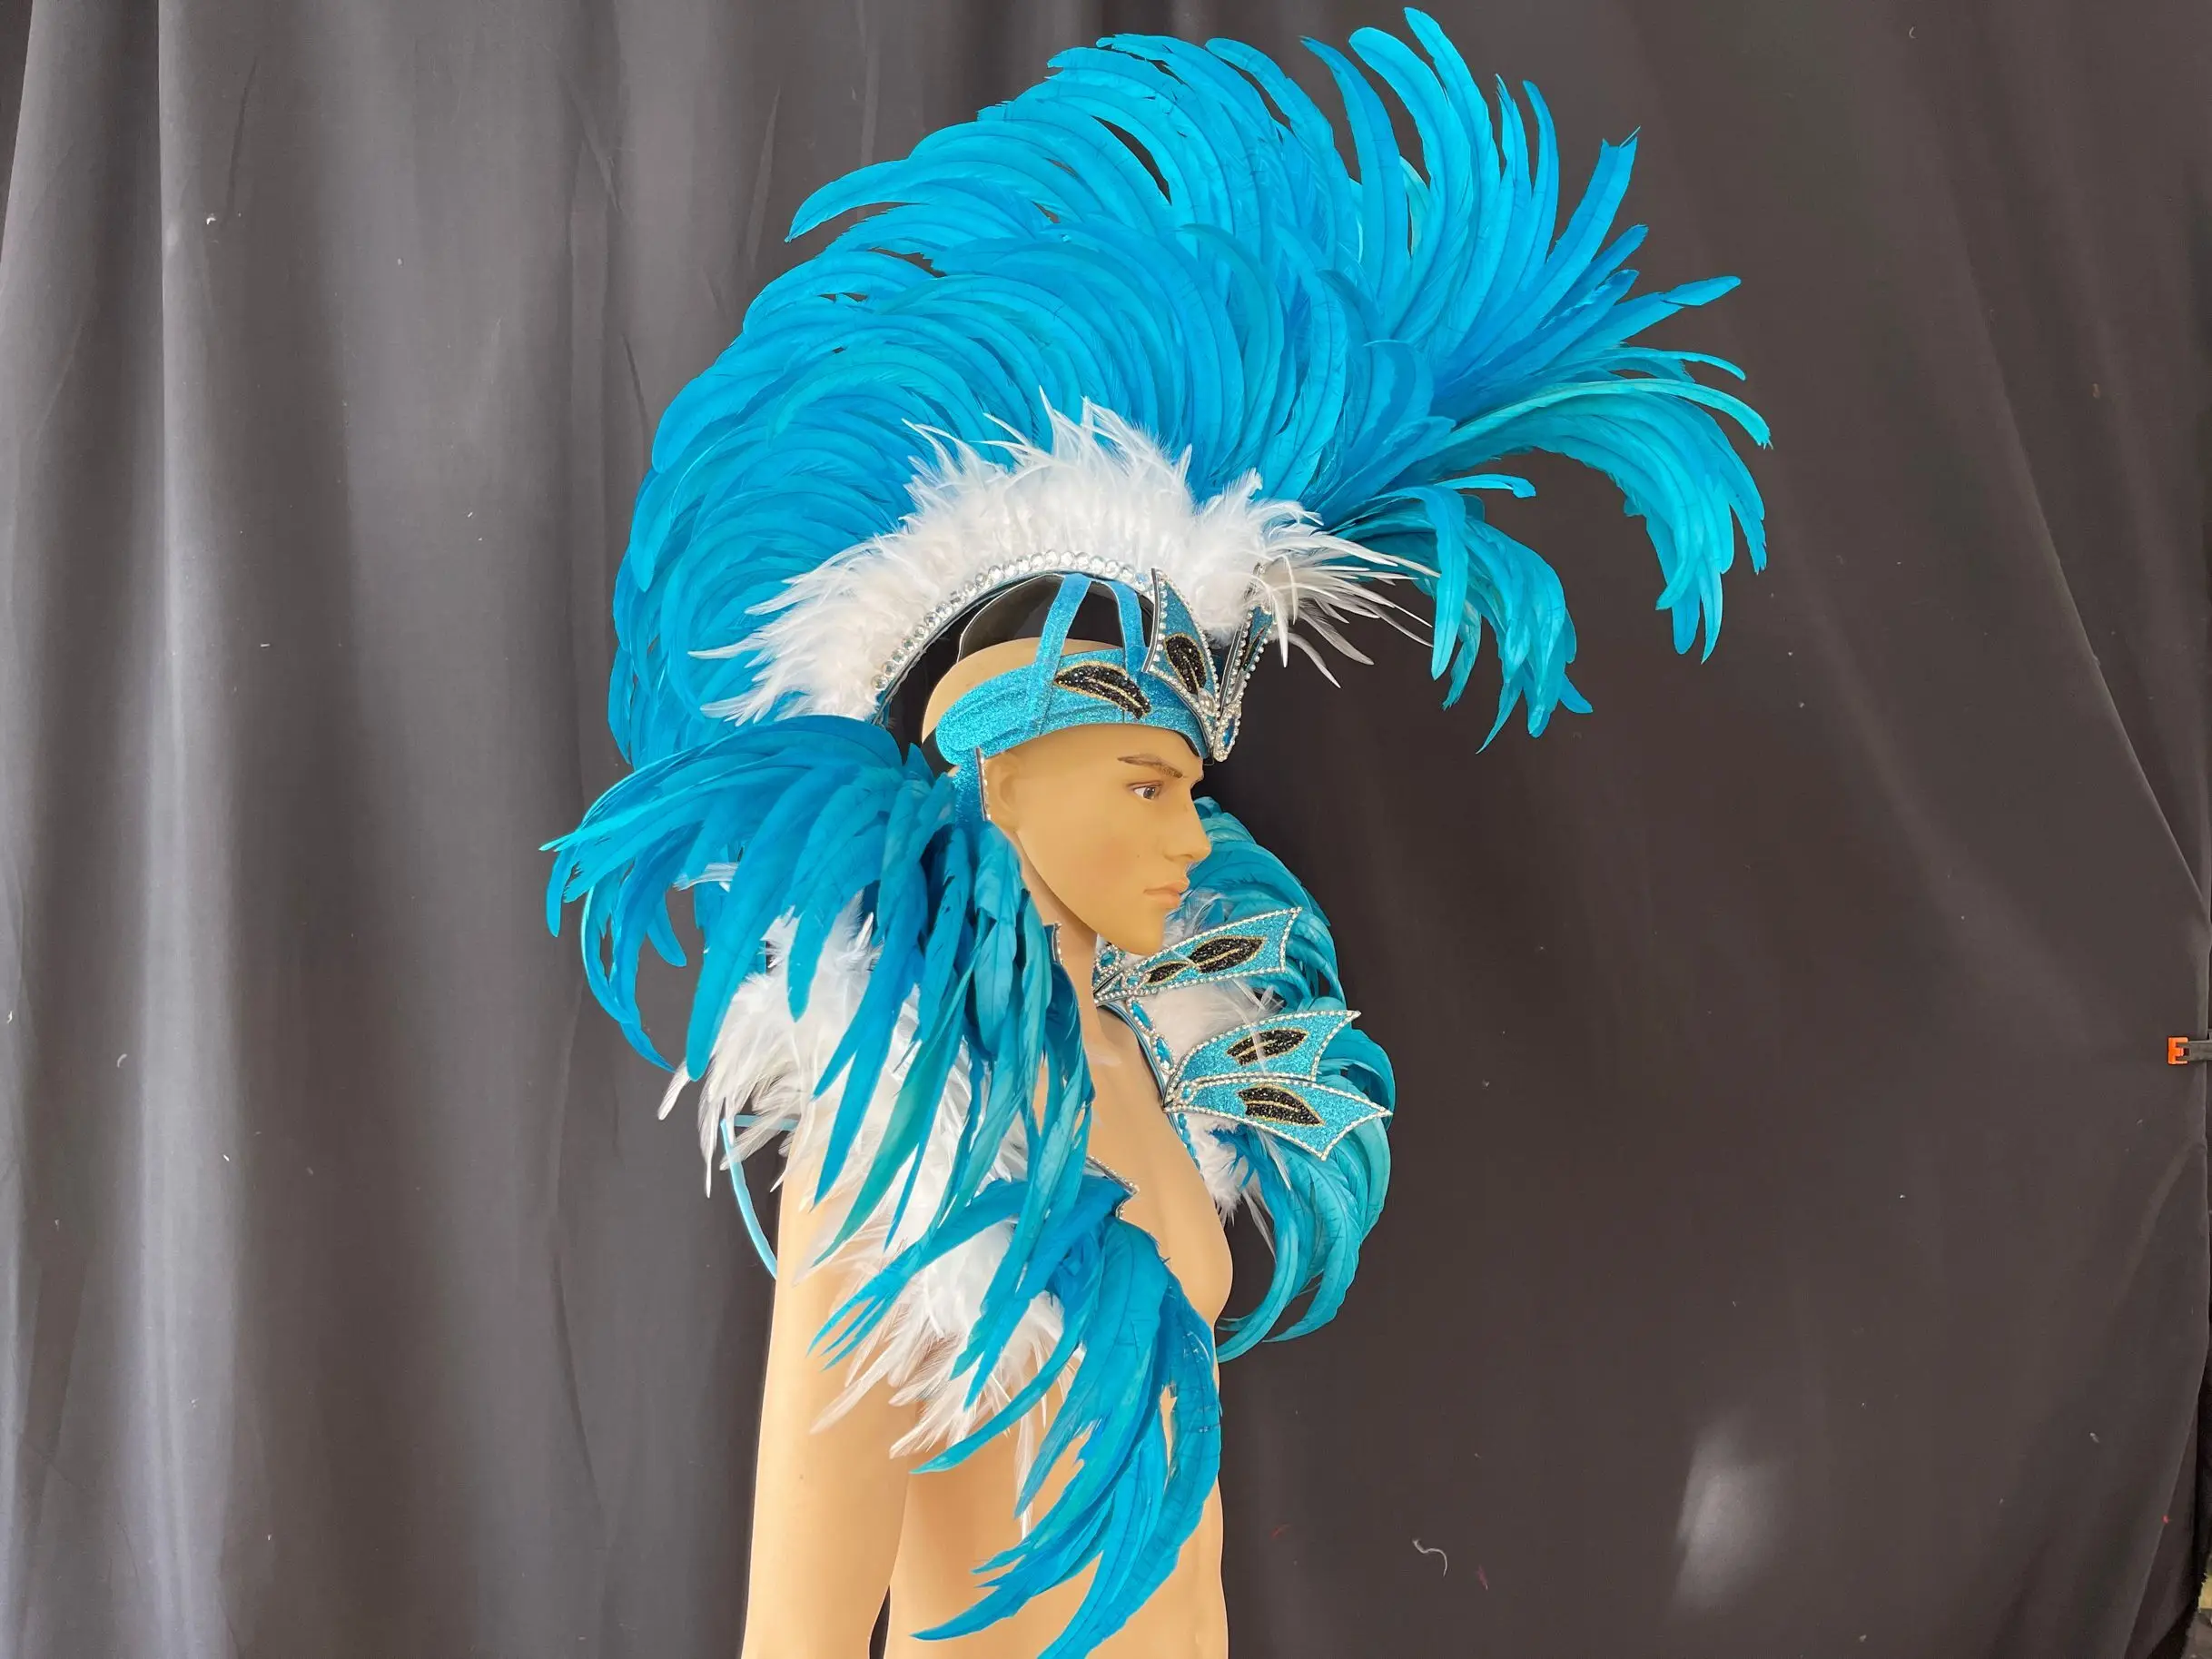 Una mujer con un disfraz de carnaval con un tocado de plumas azul